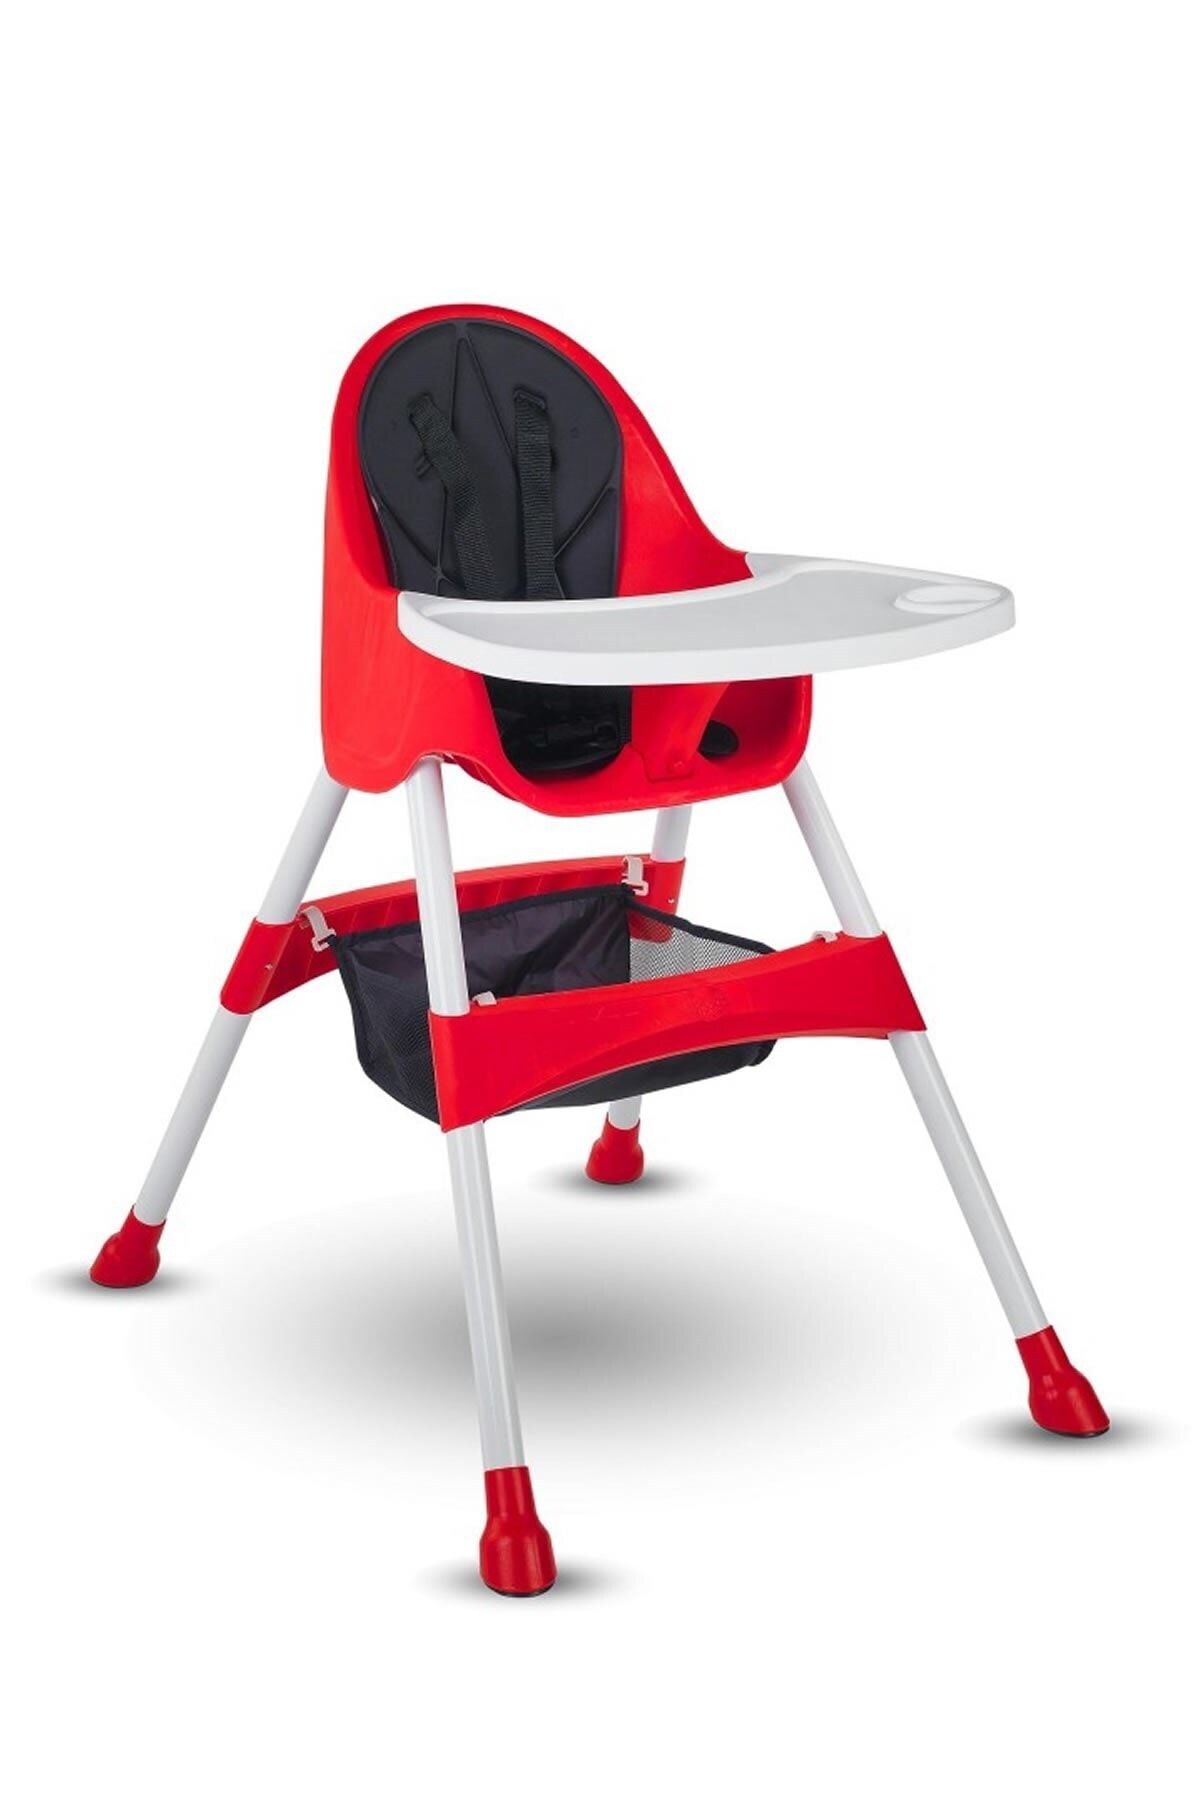 Babyhope Marka: Baby Hope Bh-7001 Royal Mama Sandalyesi Kırmızı Kategori: Deniz Topu